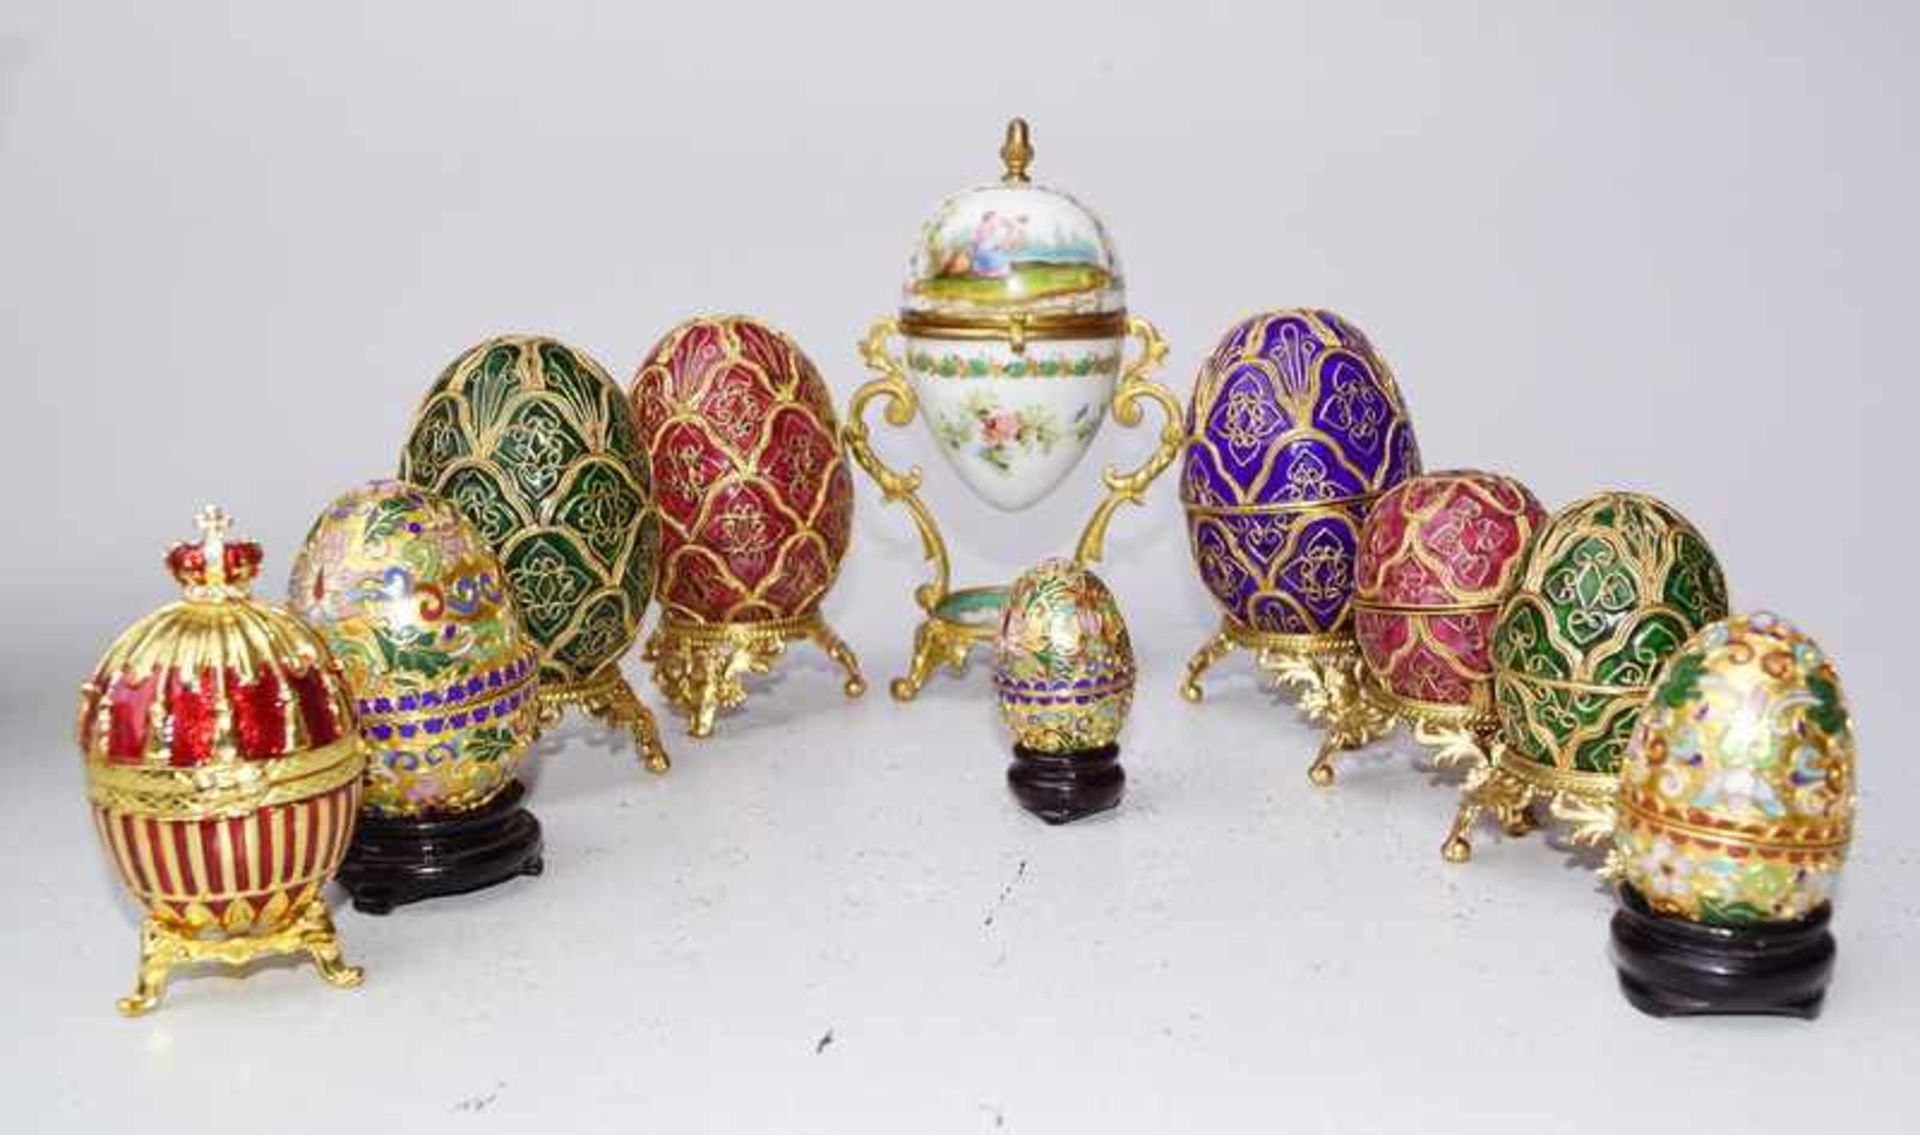 10 emaillierte, vergoldete Eier nach russischem Vorbild Metall vergoldet emailliert, teilweise auf